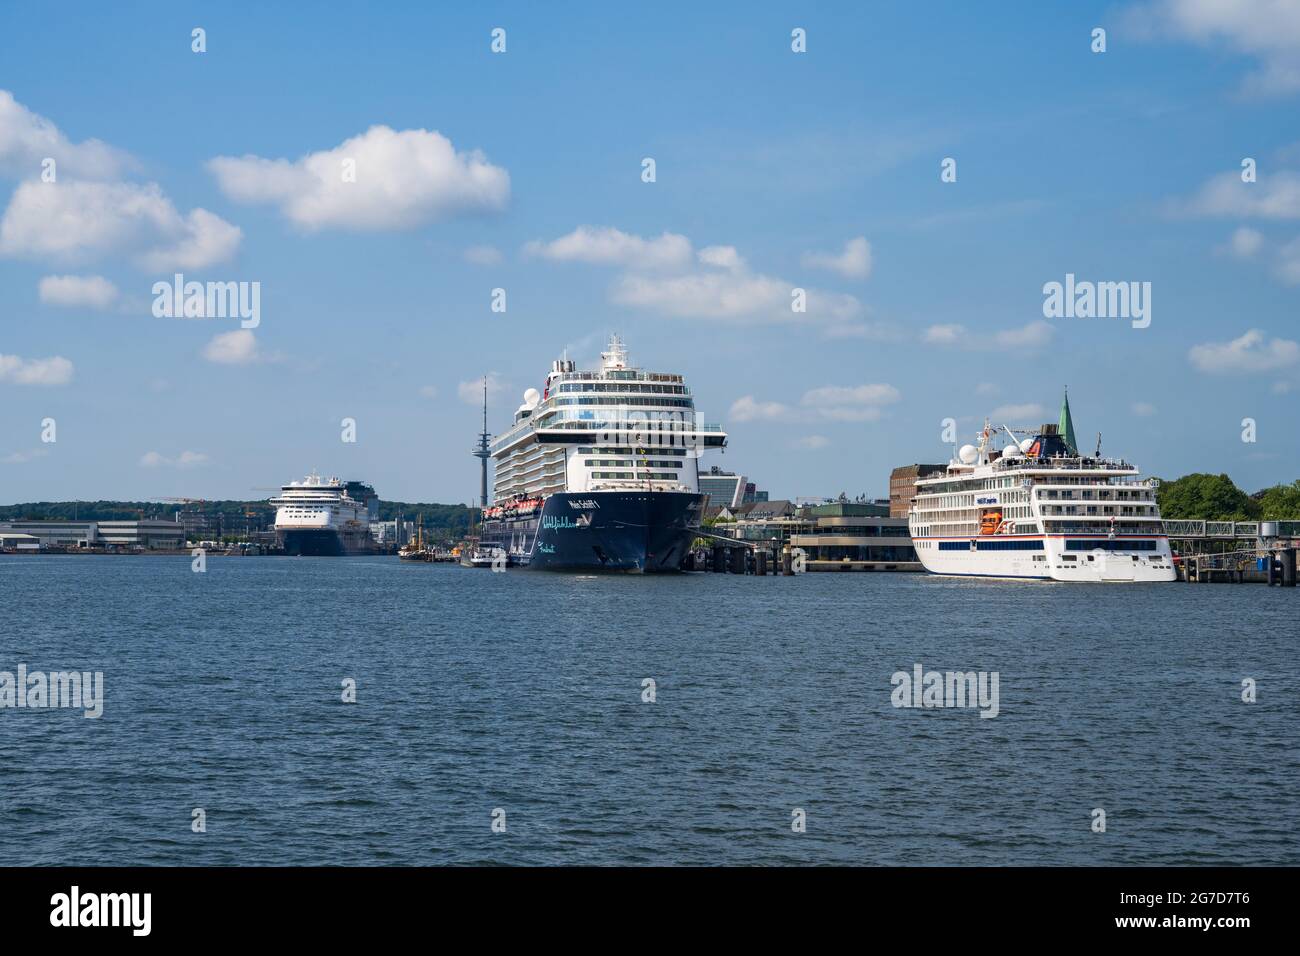 Panorama mit Norwegenfähre und Kreuzfahrtschiffen am Ostseekai Stock Photo